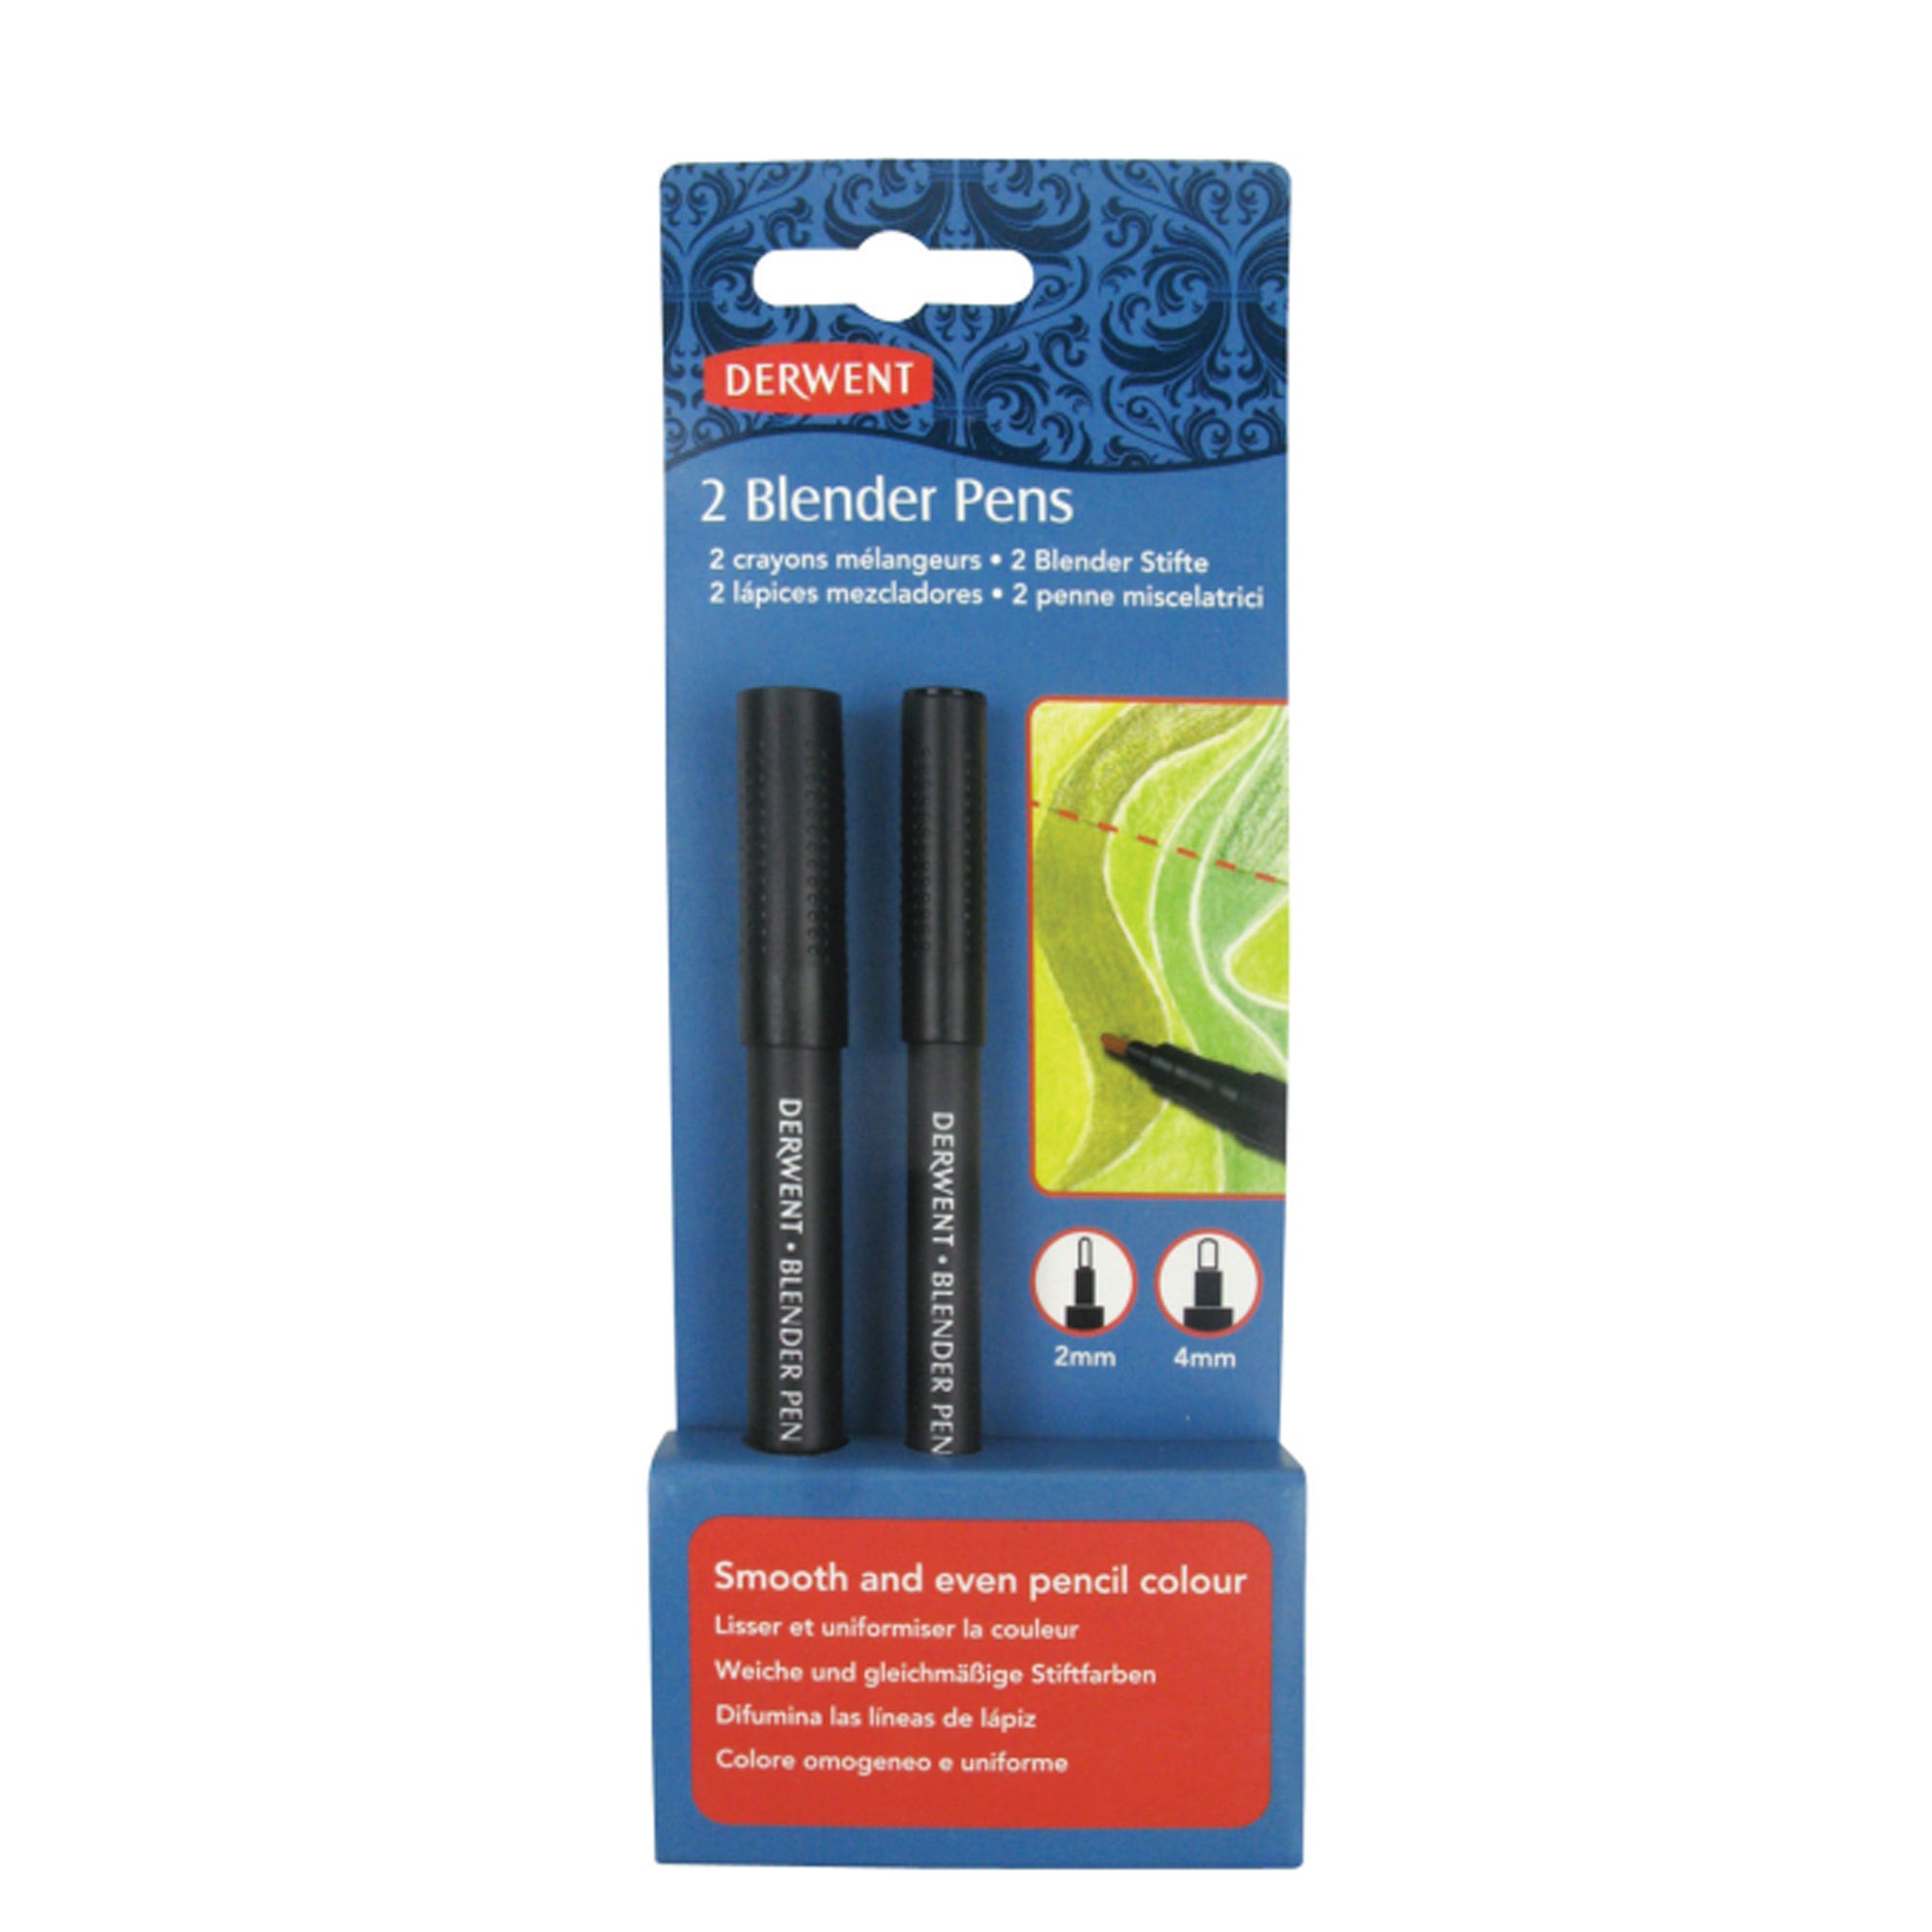 Derwent - 2 Blender Pens in box